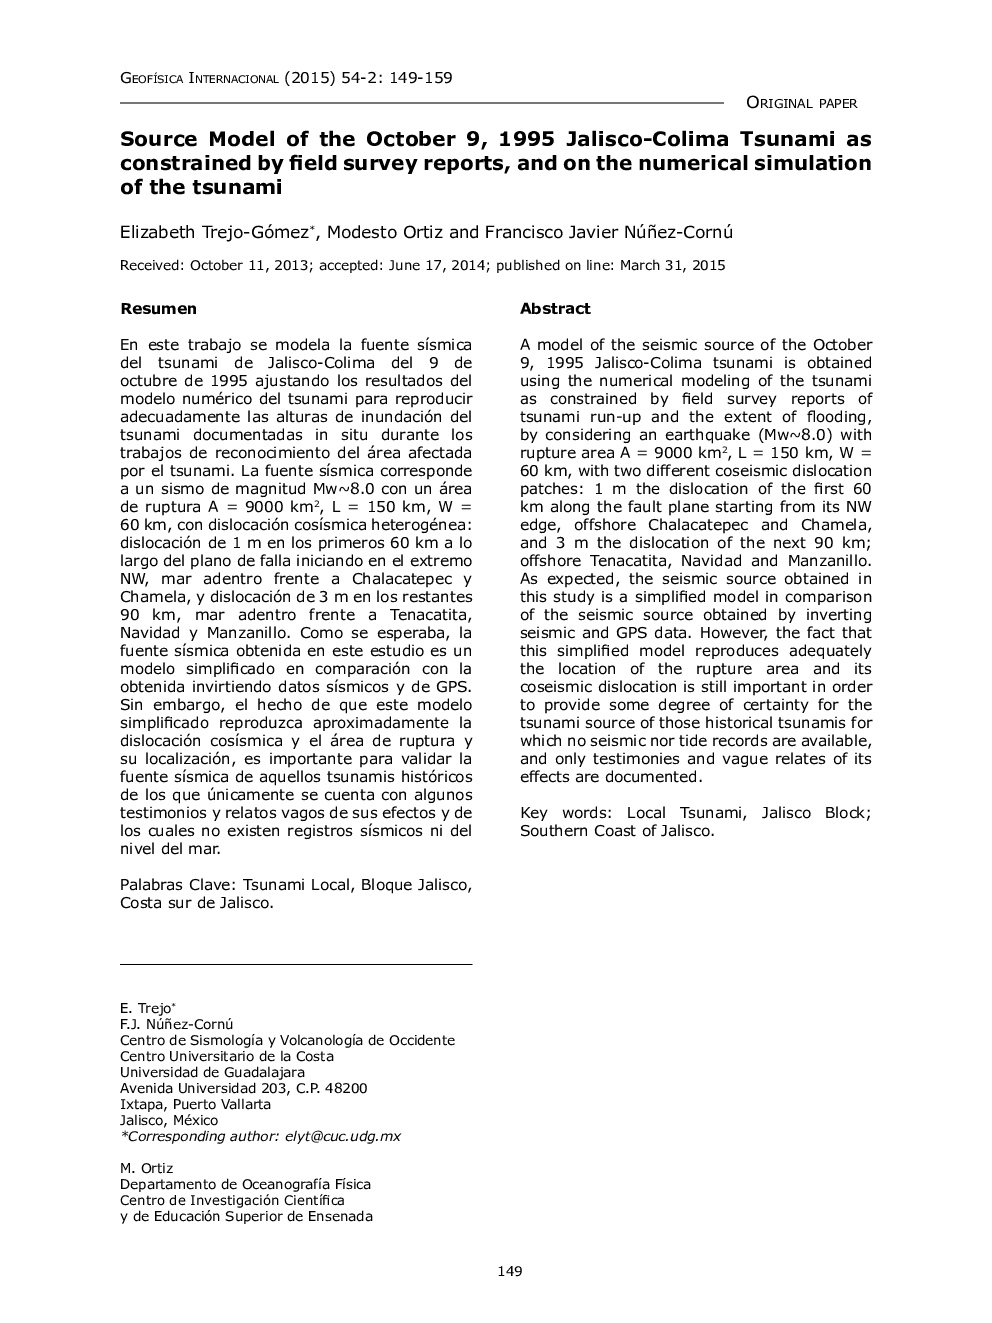 مدل منبع از 1995 سیزدهم ژوئیه 1995، جالسکو-کلیمه سونامی به عنوان محدود شده توسط گزارش های میدانی و در مورد شبیه سازی عددی سونامی 